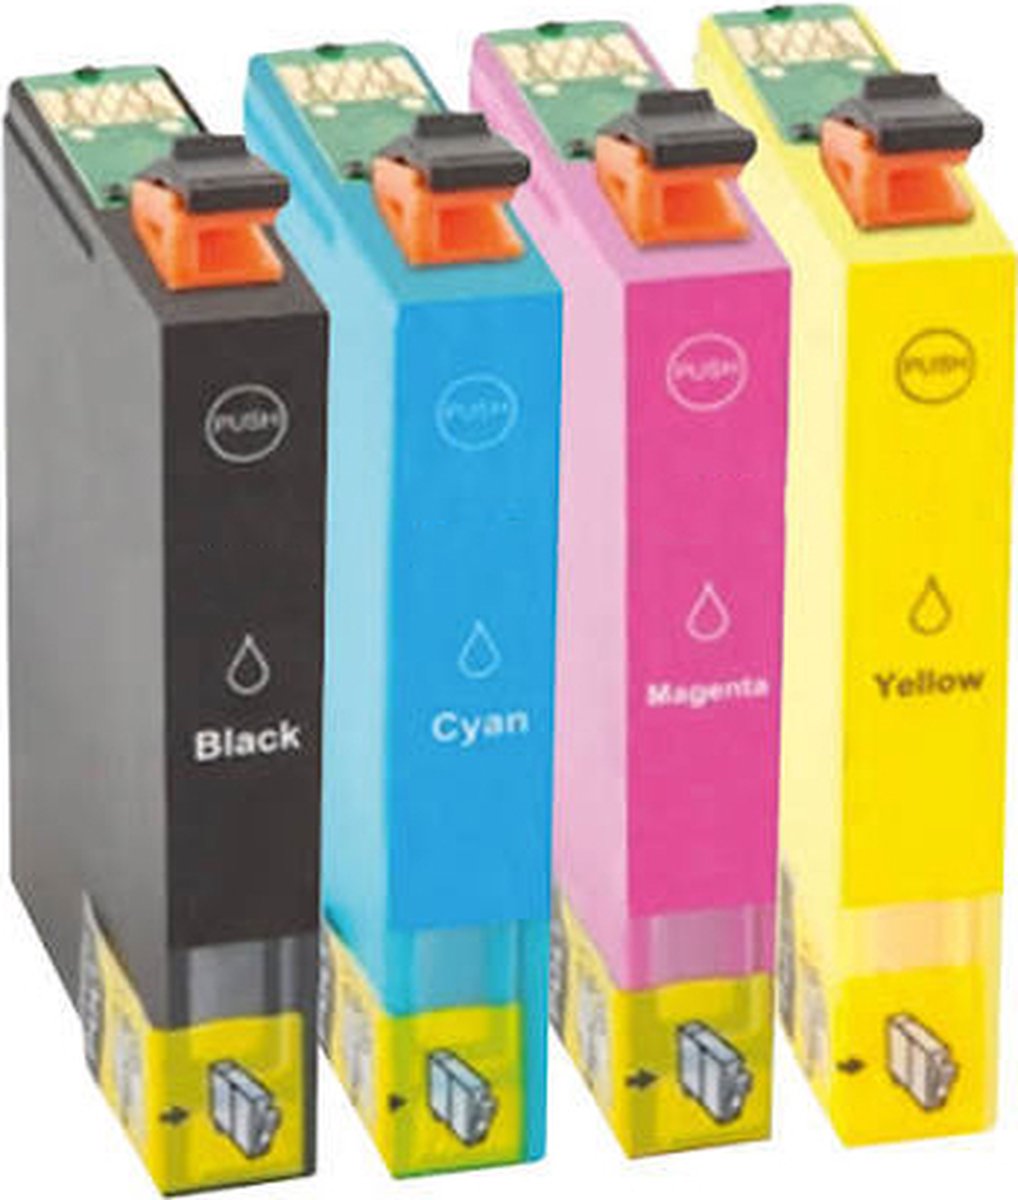 Pcman Epson Huismerk T1295 Cartridges - Zwart + Alle Kleuren Set